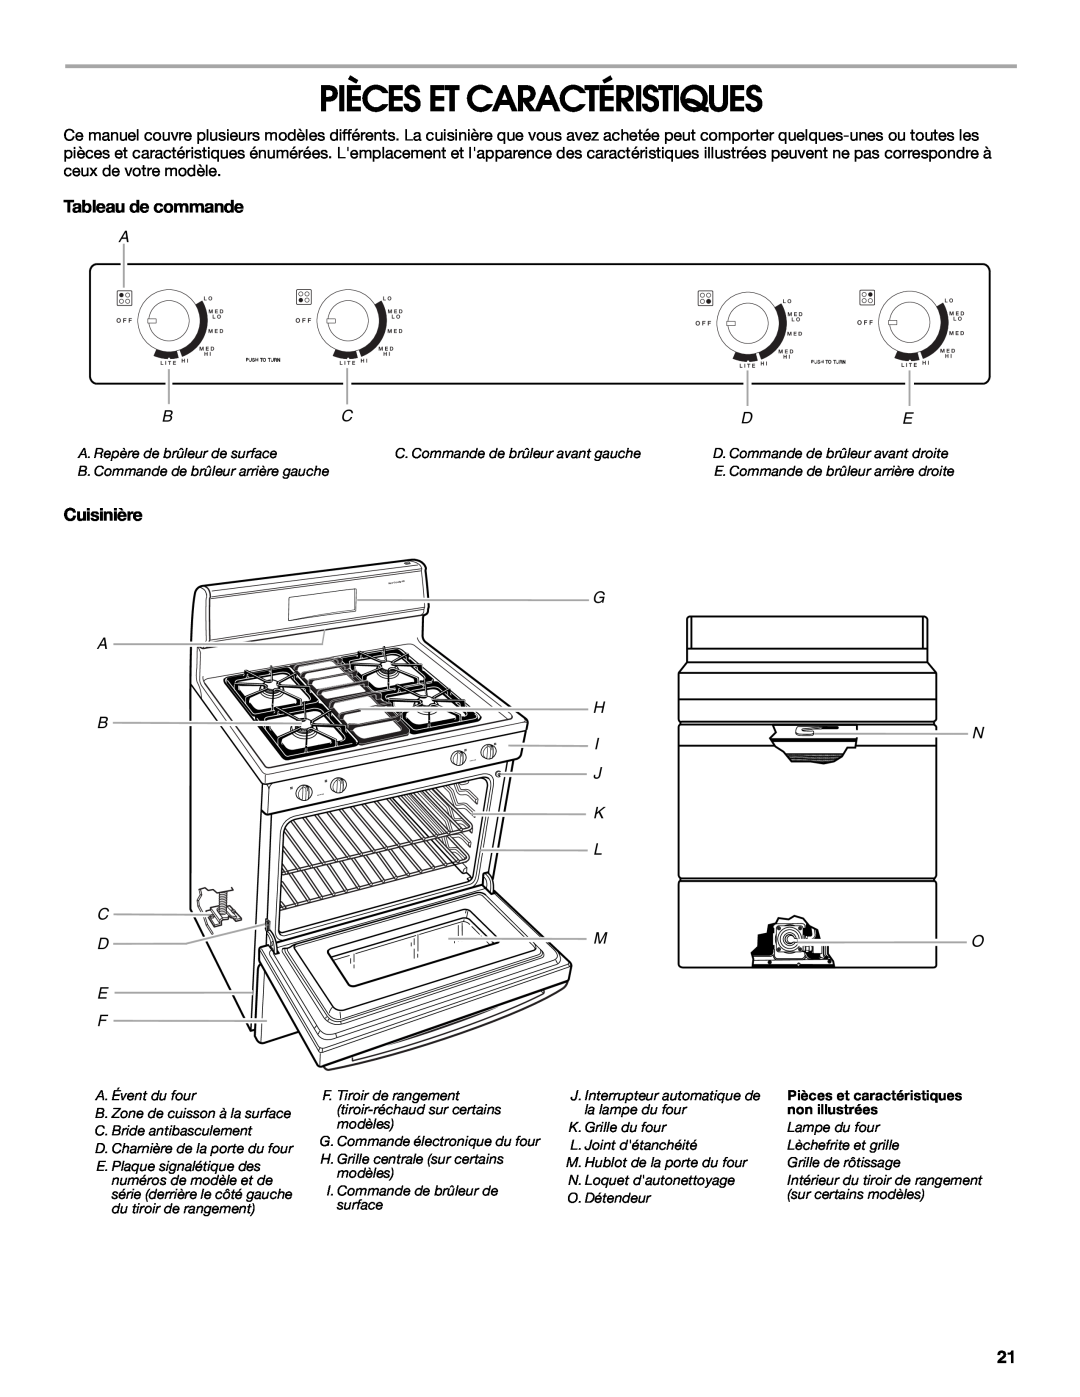 Whirlpool IGS365RS0 manual Pièces Et Caractéristiques, Tableau de commande, Cuisinière 